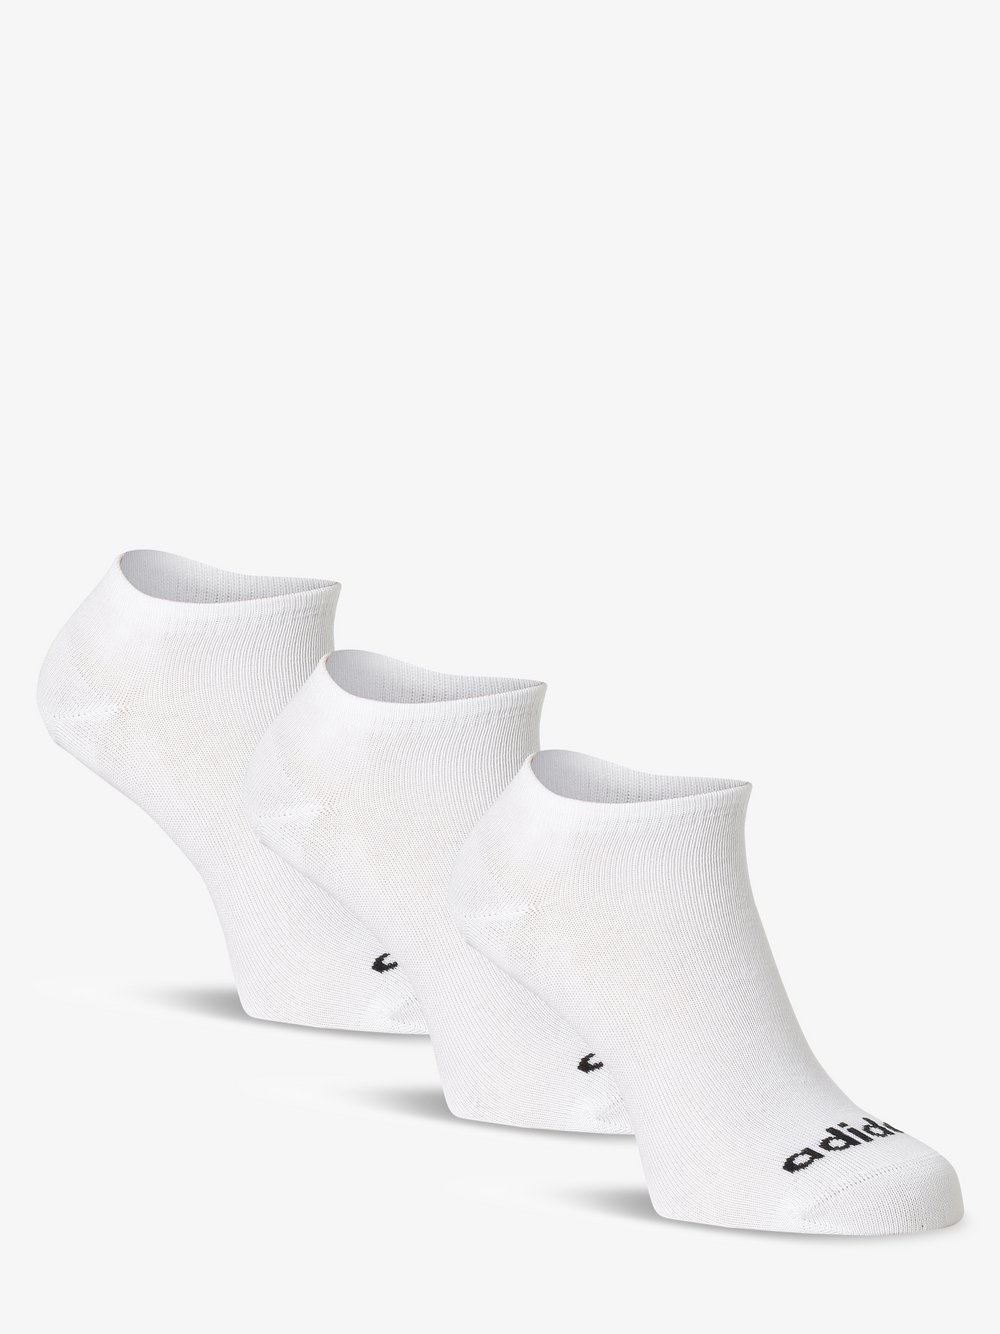 Adidas Originals - Damskie skarpety do obuwia sportowego pakowane po 3 szt., biały